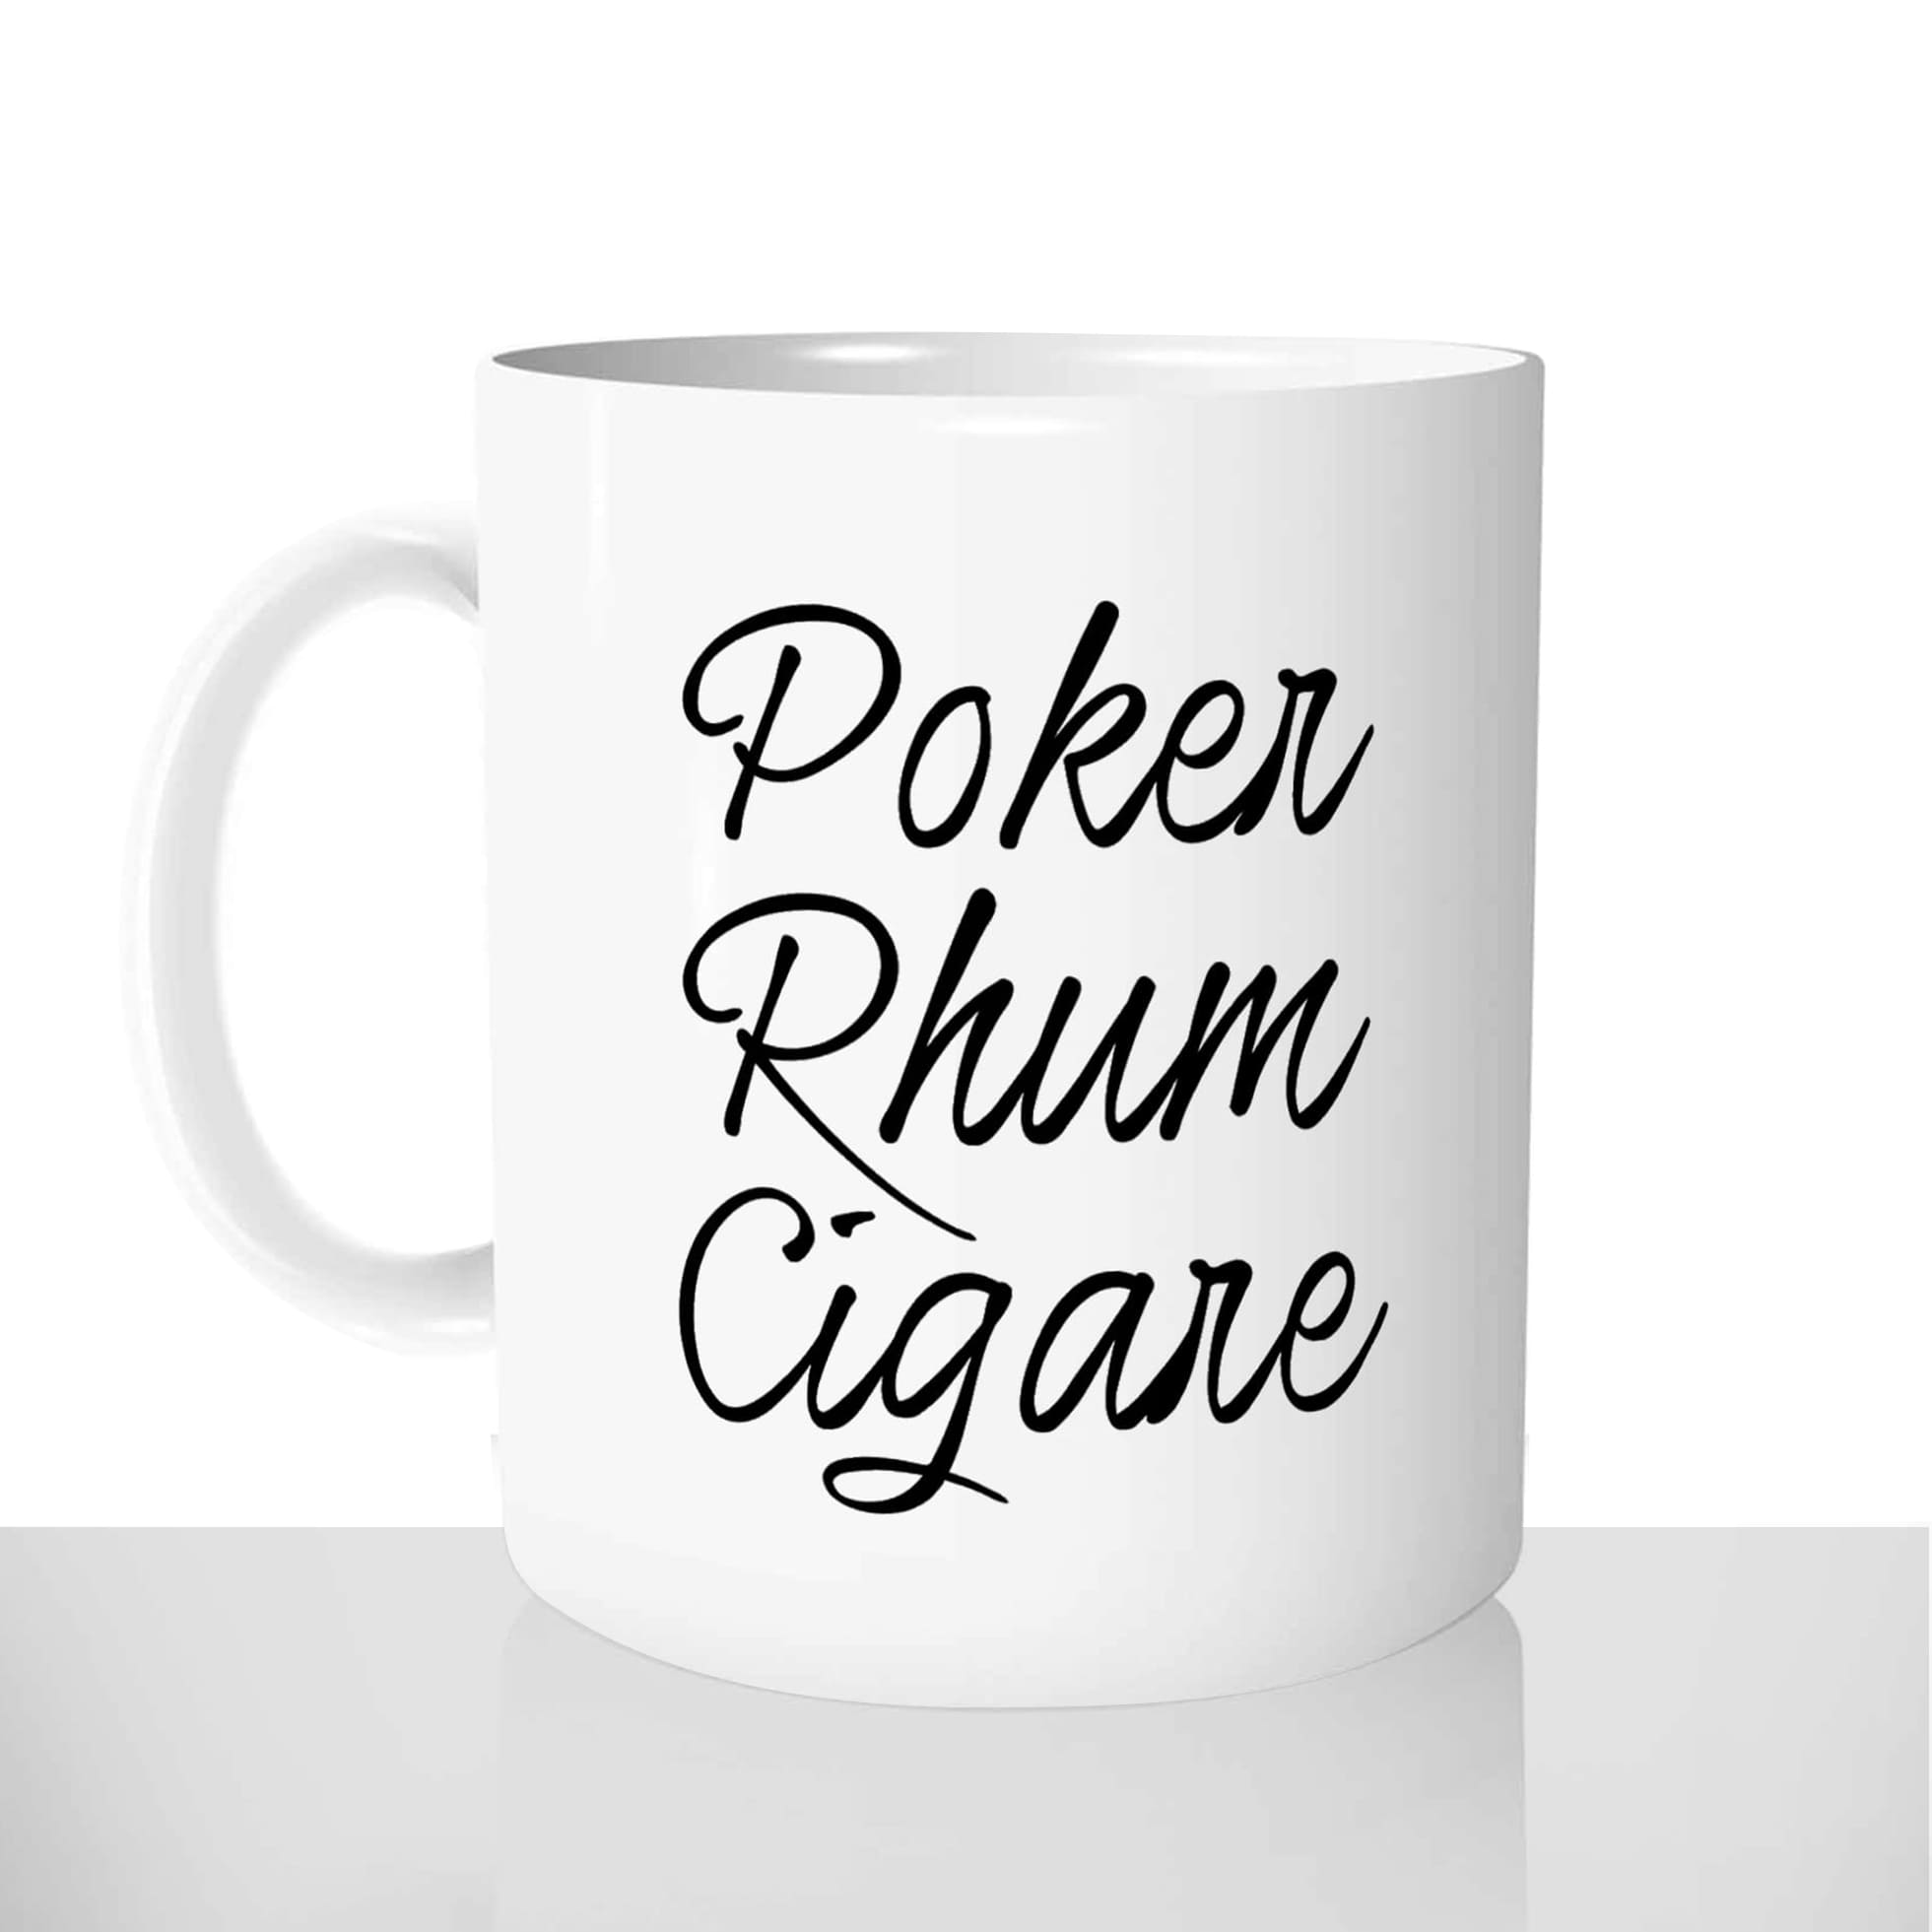 mug classique en céramique 11oz personnalisé personnalisation photo poker rhum cigare apero mec hommes copains chou offrir cadeau